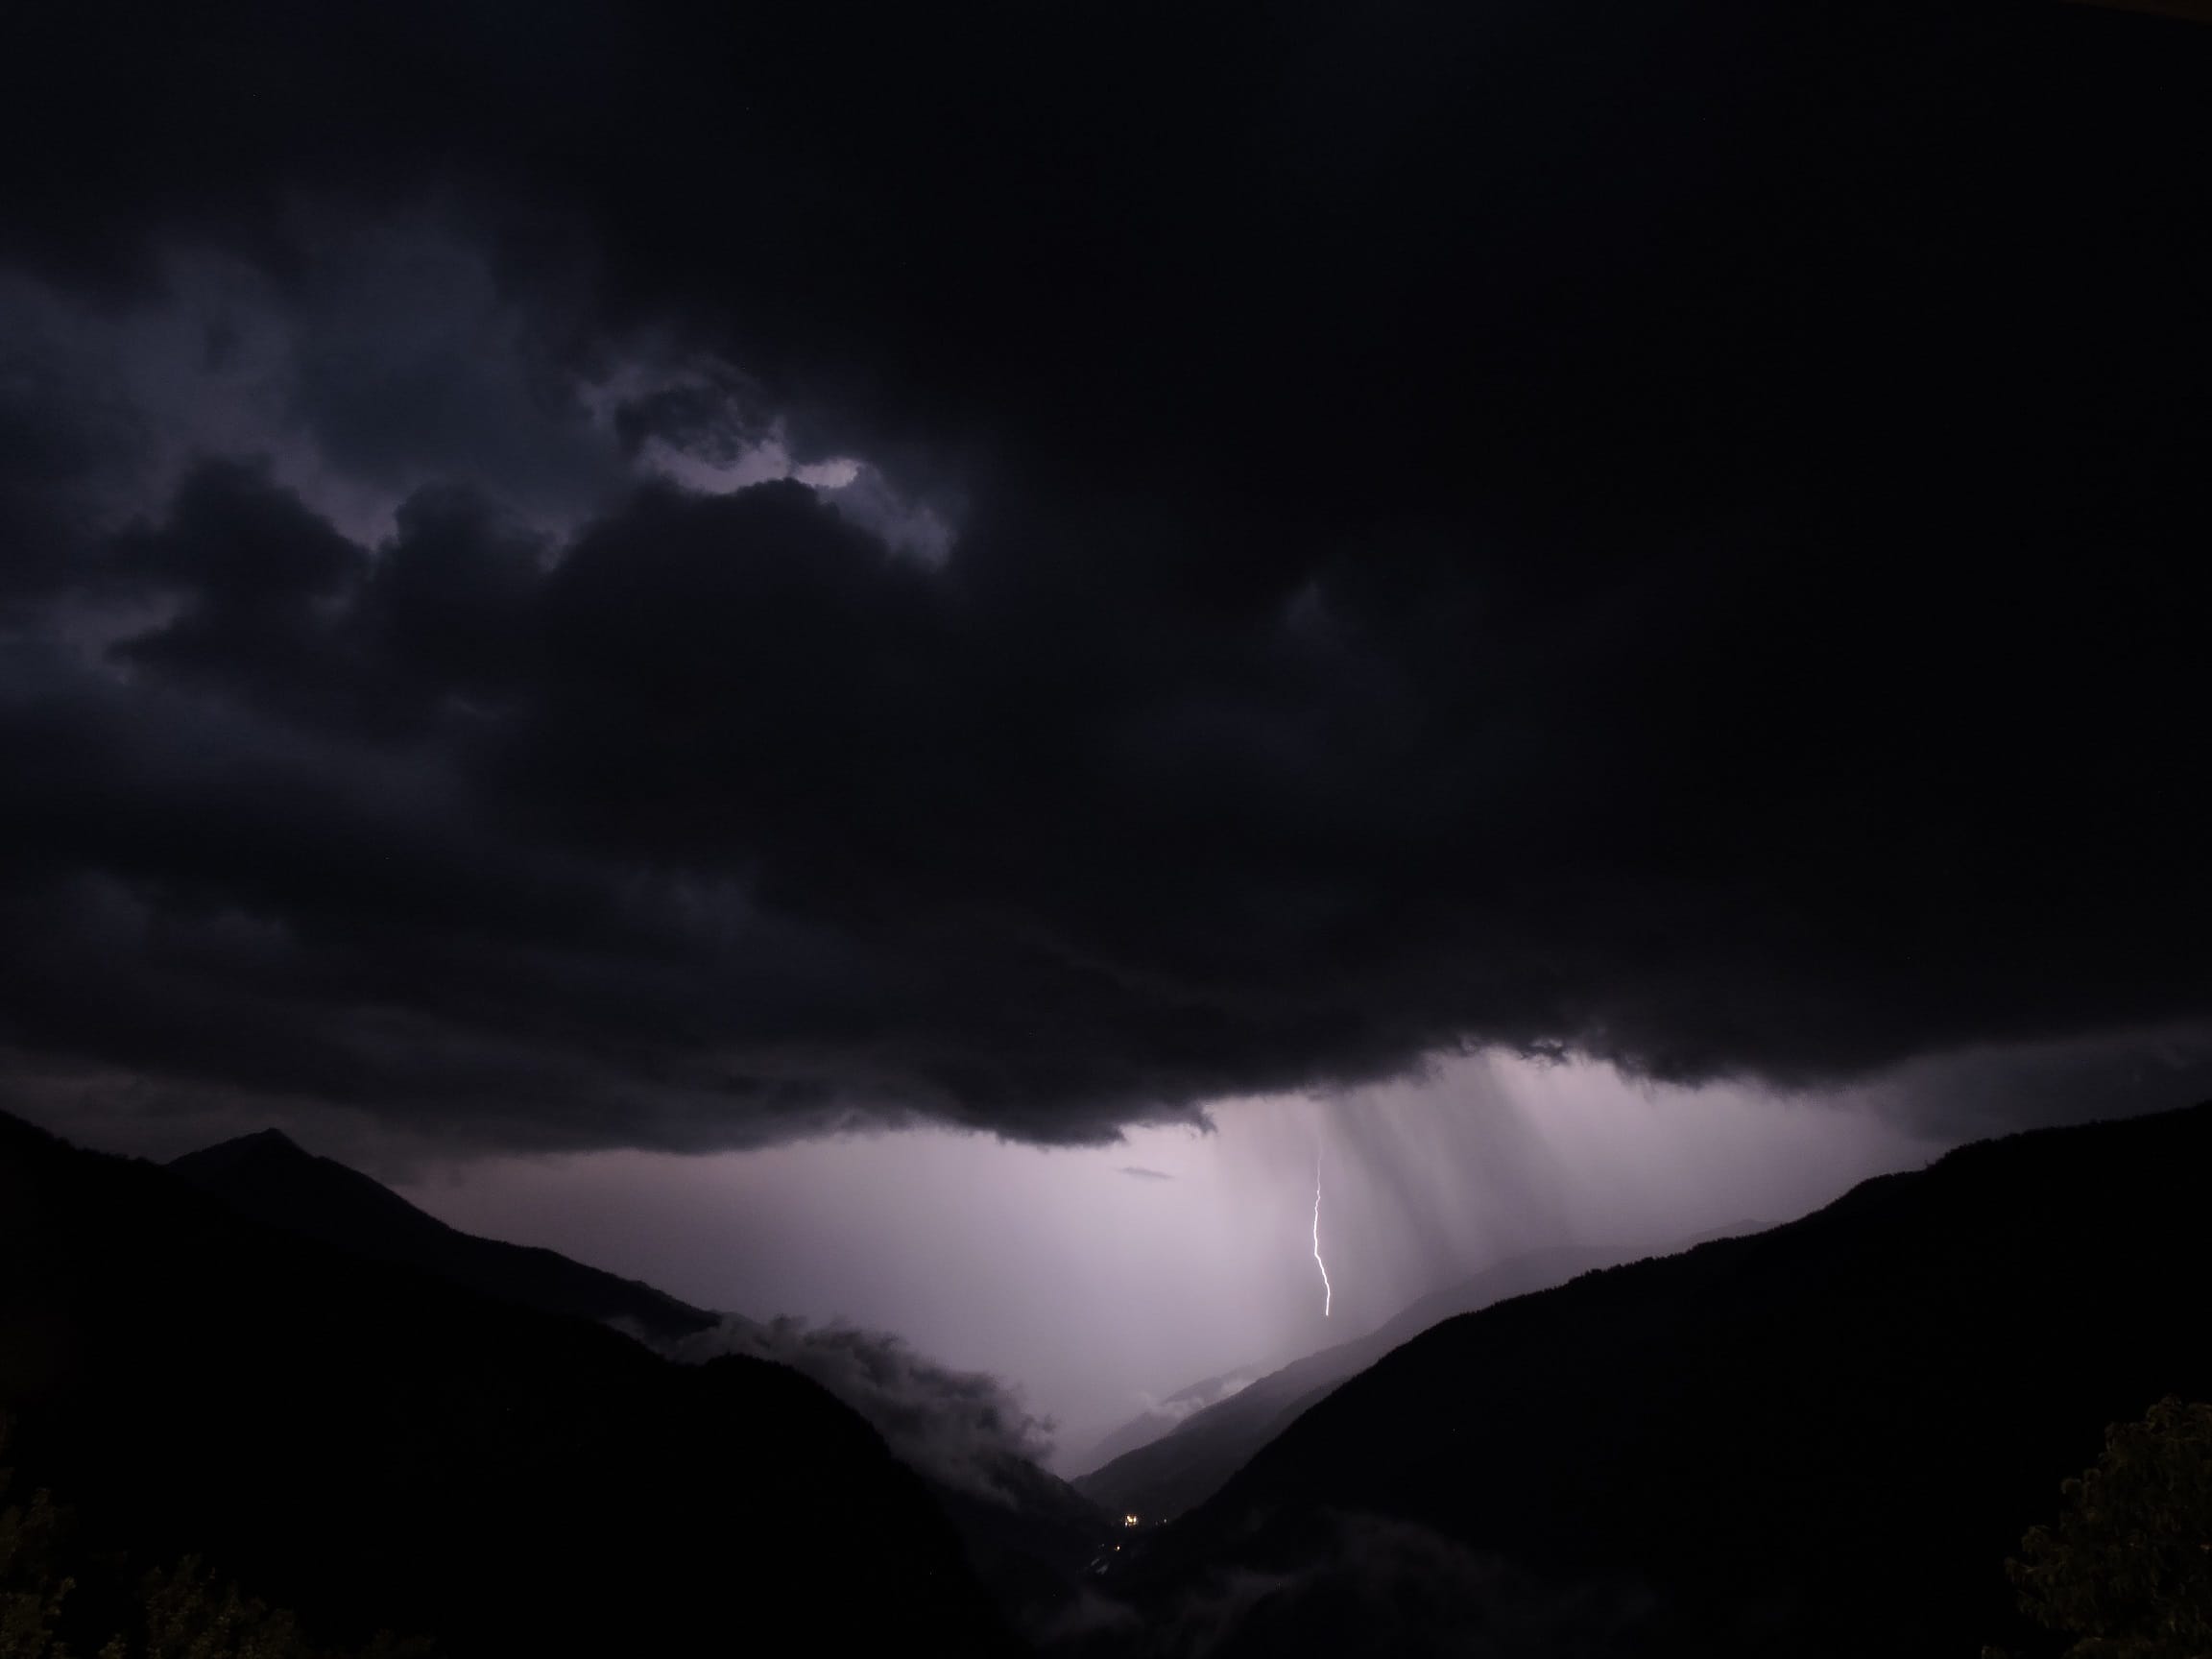 Orage nocturne dans les Hautes-Alpes (Queyras) avec grêle et forte activité électrique - 20/07/2018 22:02 - raphael blanchard